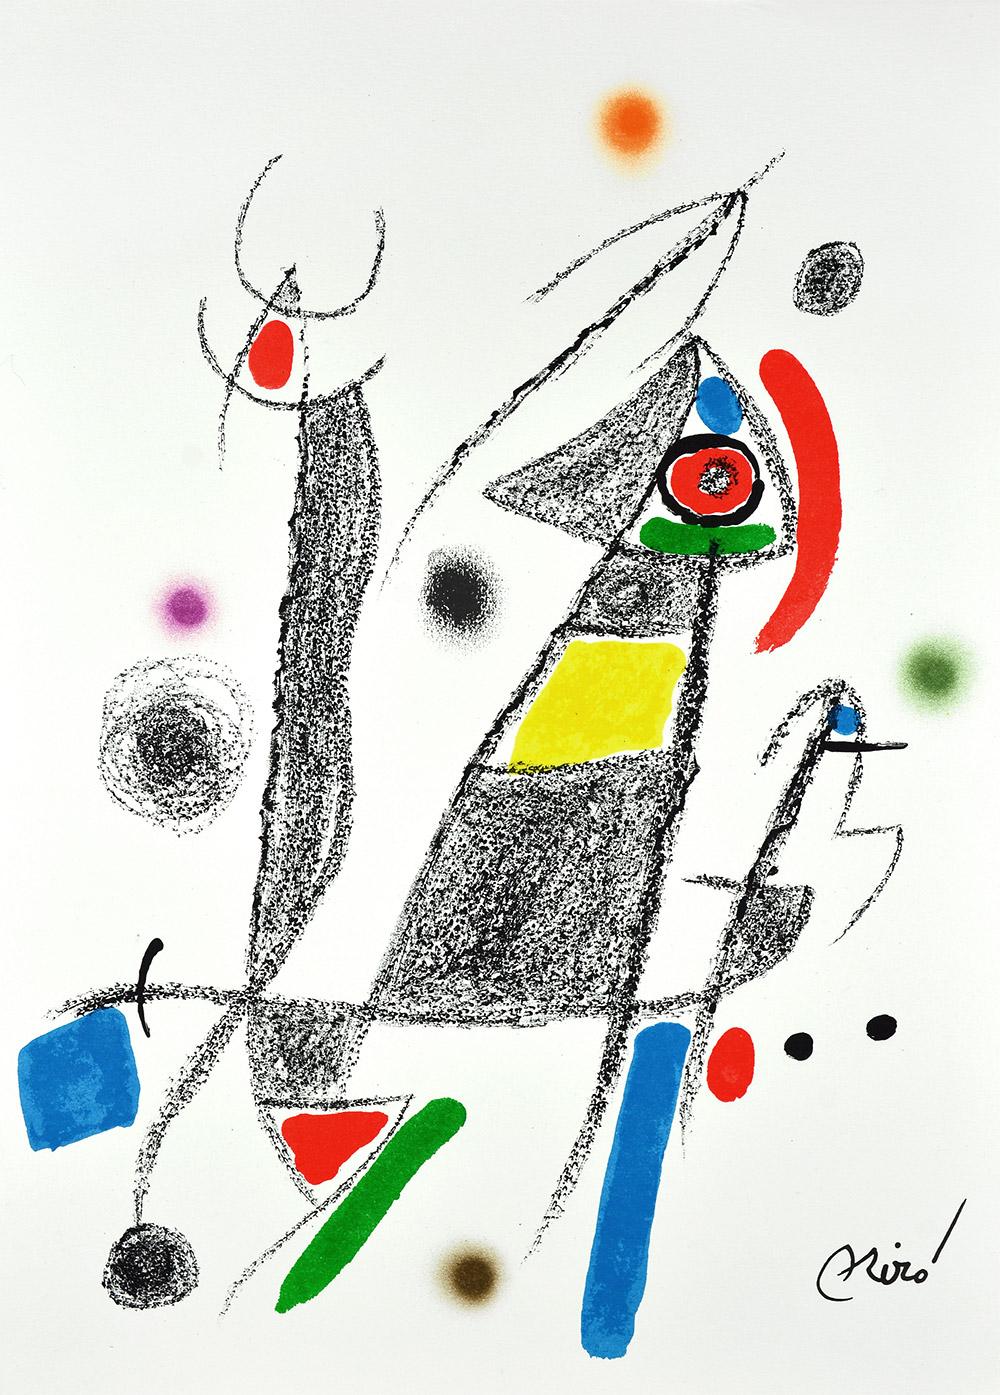 Joan Miró - Maravillas con variaciones acrósticas en el jardín de Miró VI
Date of creation: 1975
Medium: Lithograph on Gvarro paper
Edition: 1500
Size: 49,5 x 35,5 cm
Observations: Lithograph on Gvarro paper plate signed. Edited by Polígrafa,